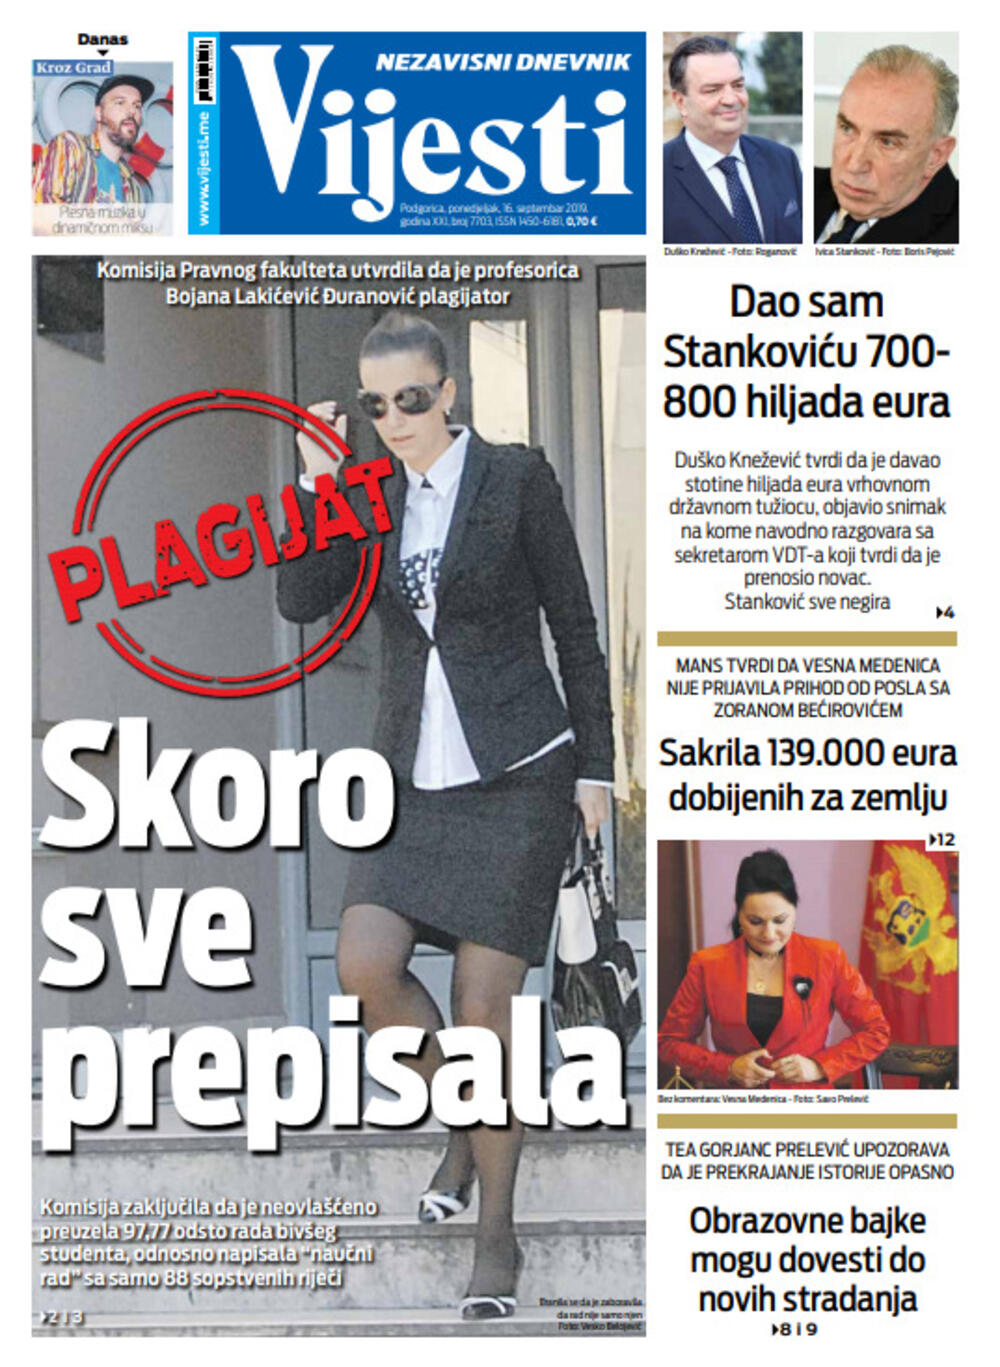 Naslovna strana "Vijesti" za 16. septembar, Foto: Vijesti